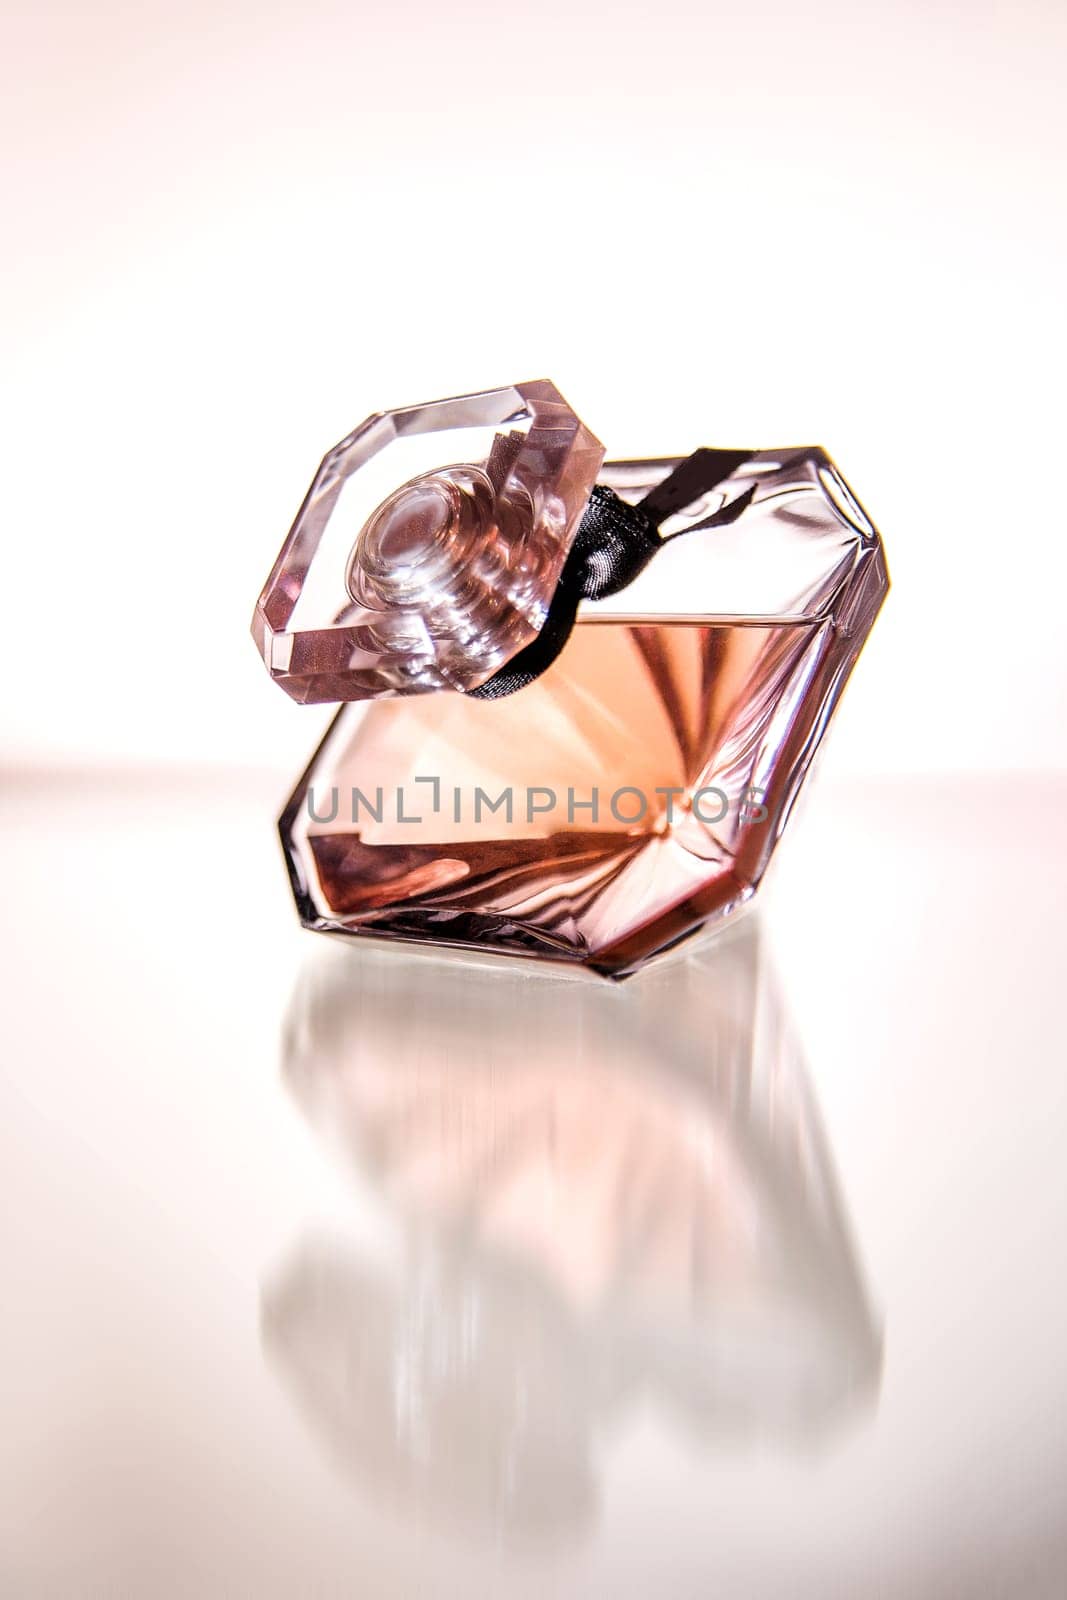 beautiful glass perfume bottle close-up. subject photo.